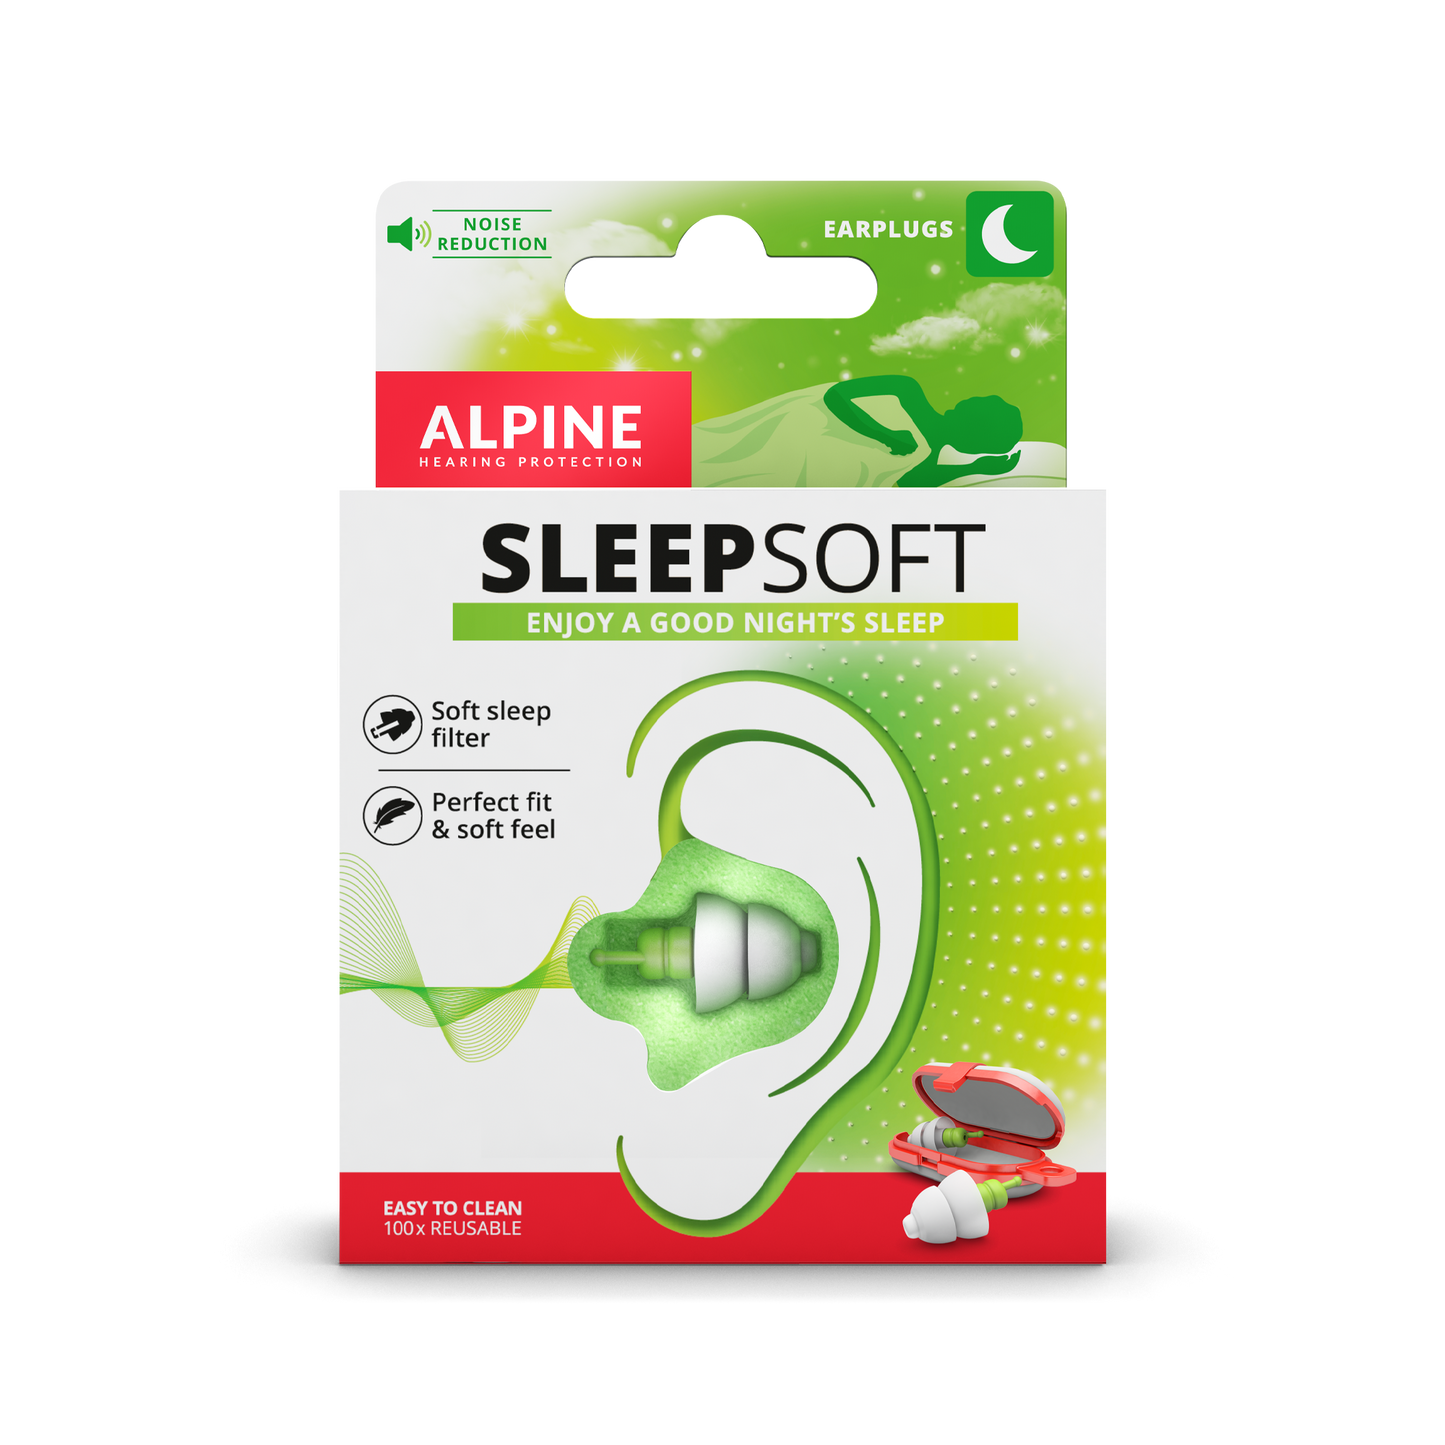 Alpine SleepSoft oordoppen voor een goede nachtrust